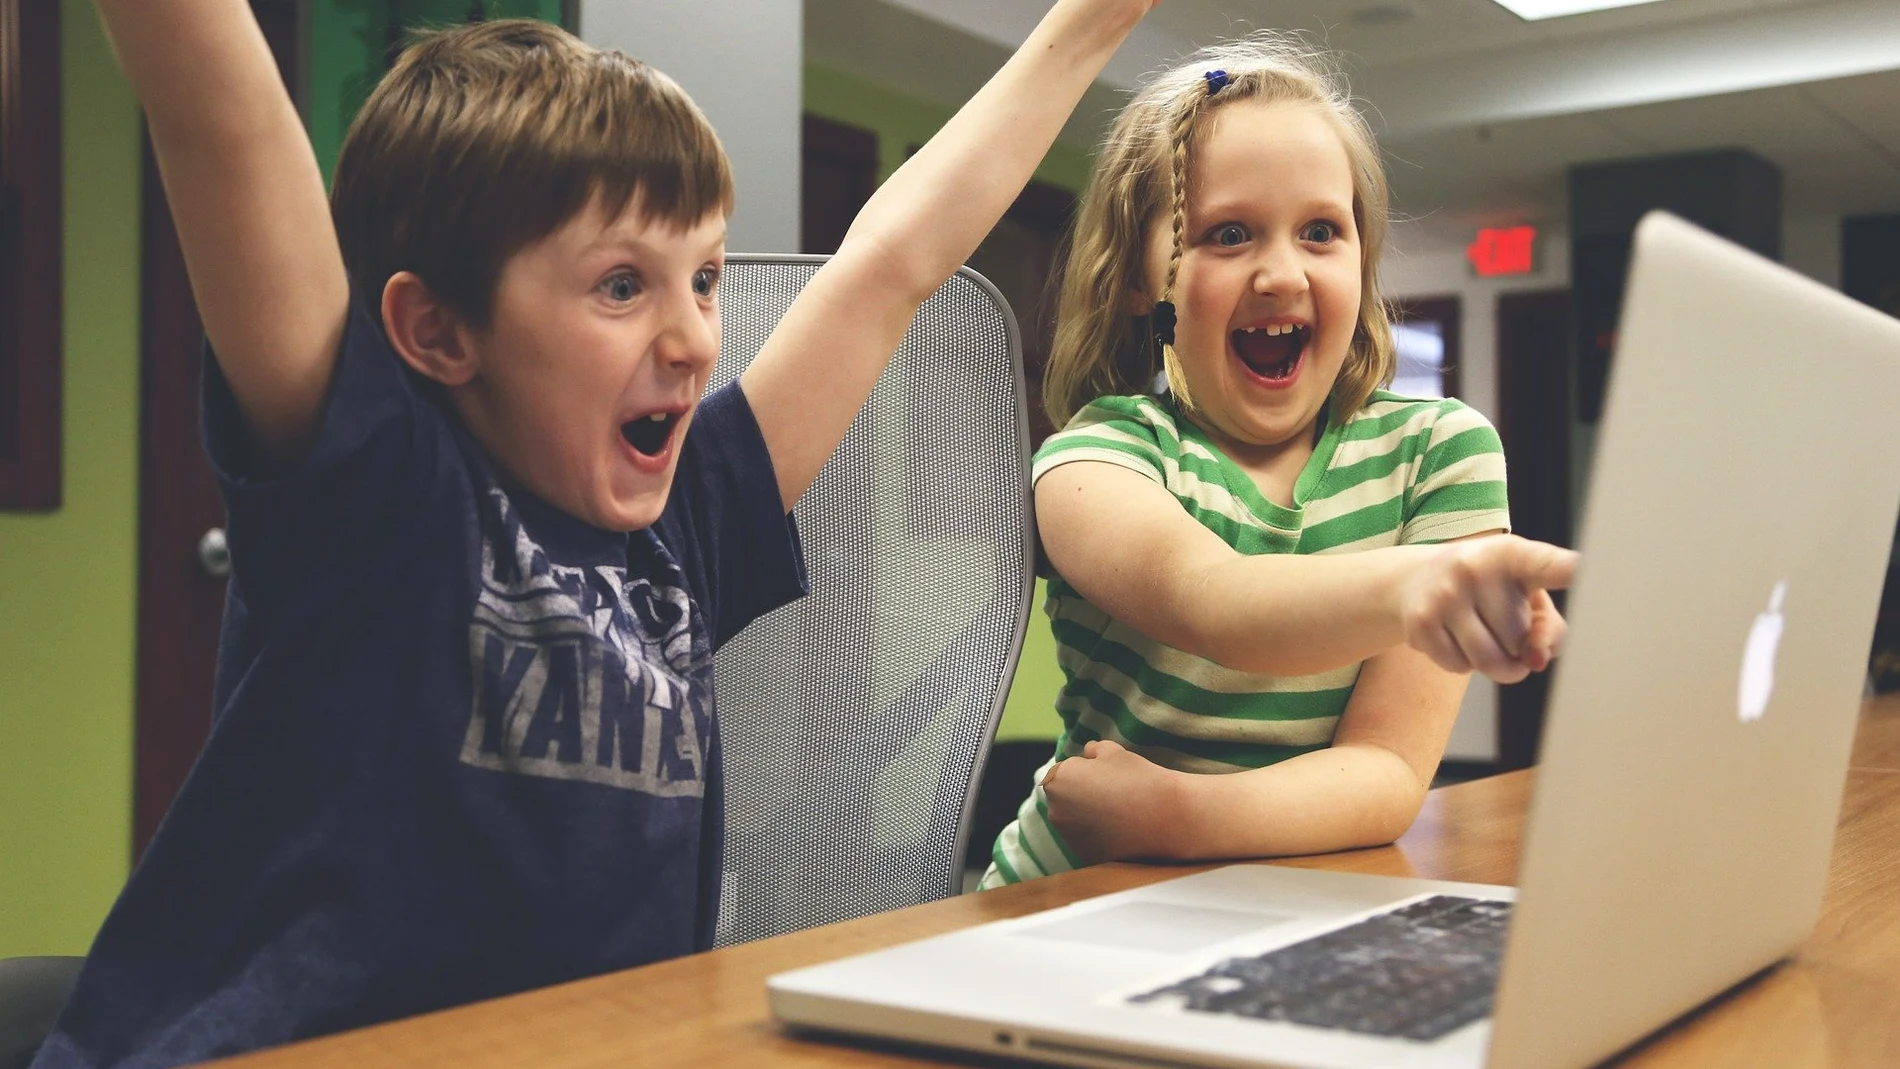 Dos niños viendo vídeos en internet